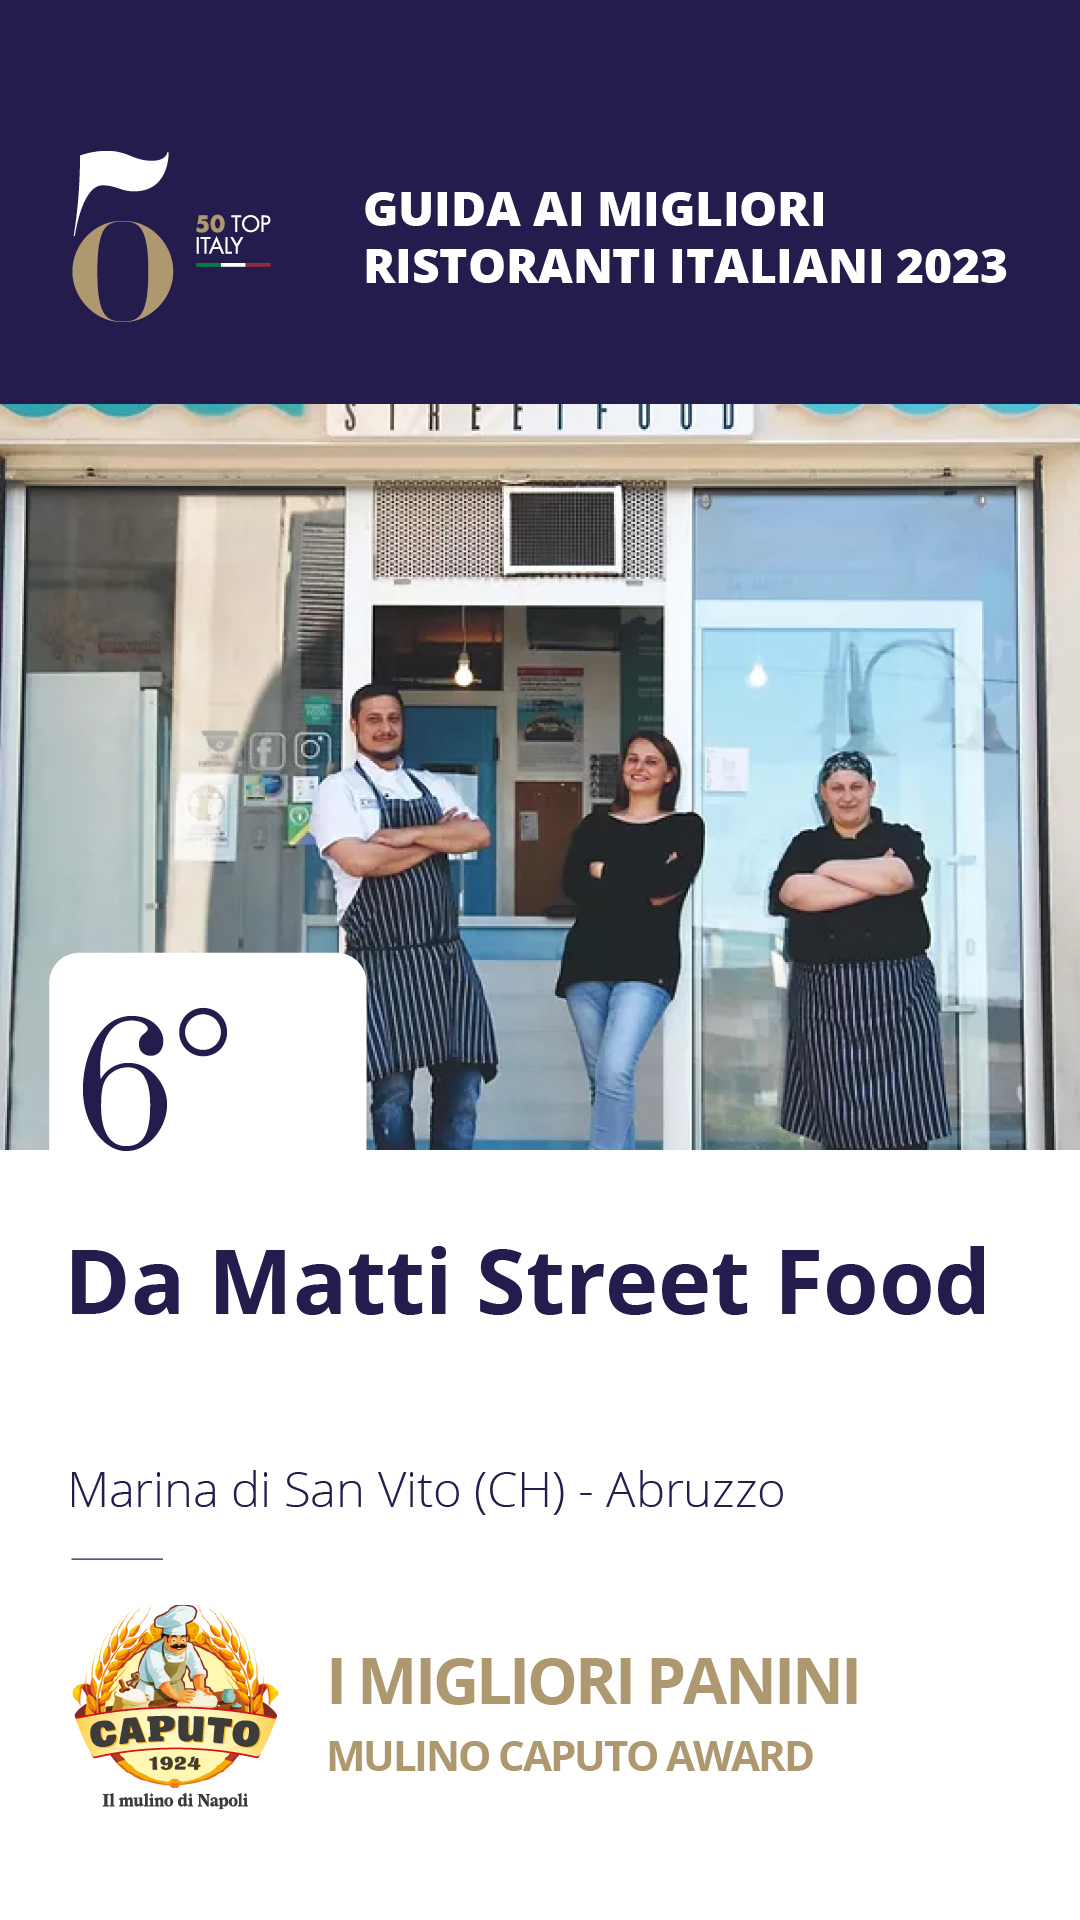 6 - Da Matti Street Food - Marina di San Vito (CH), Abruzzo